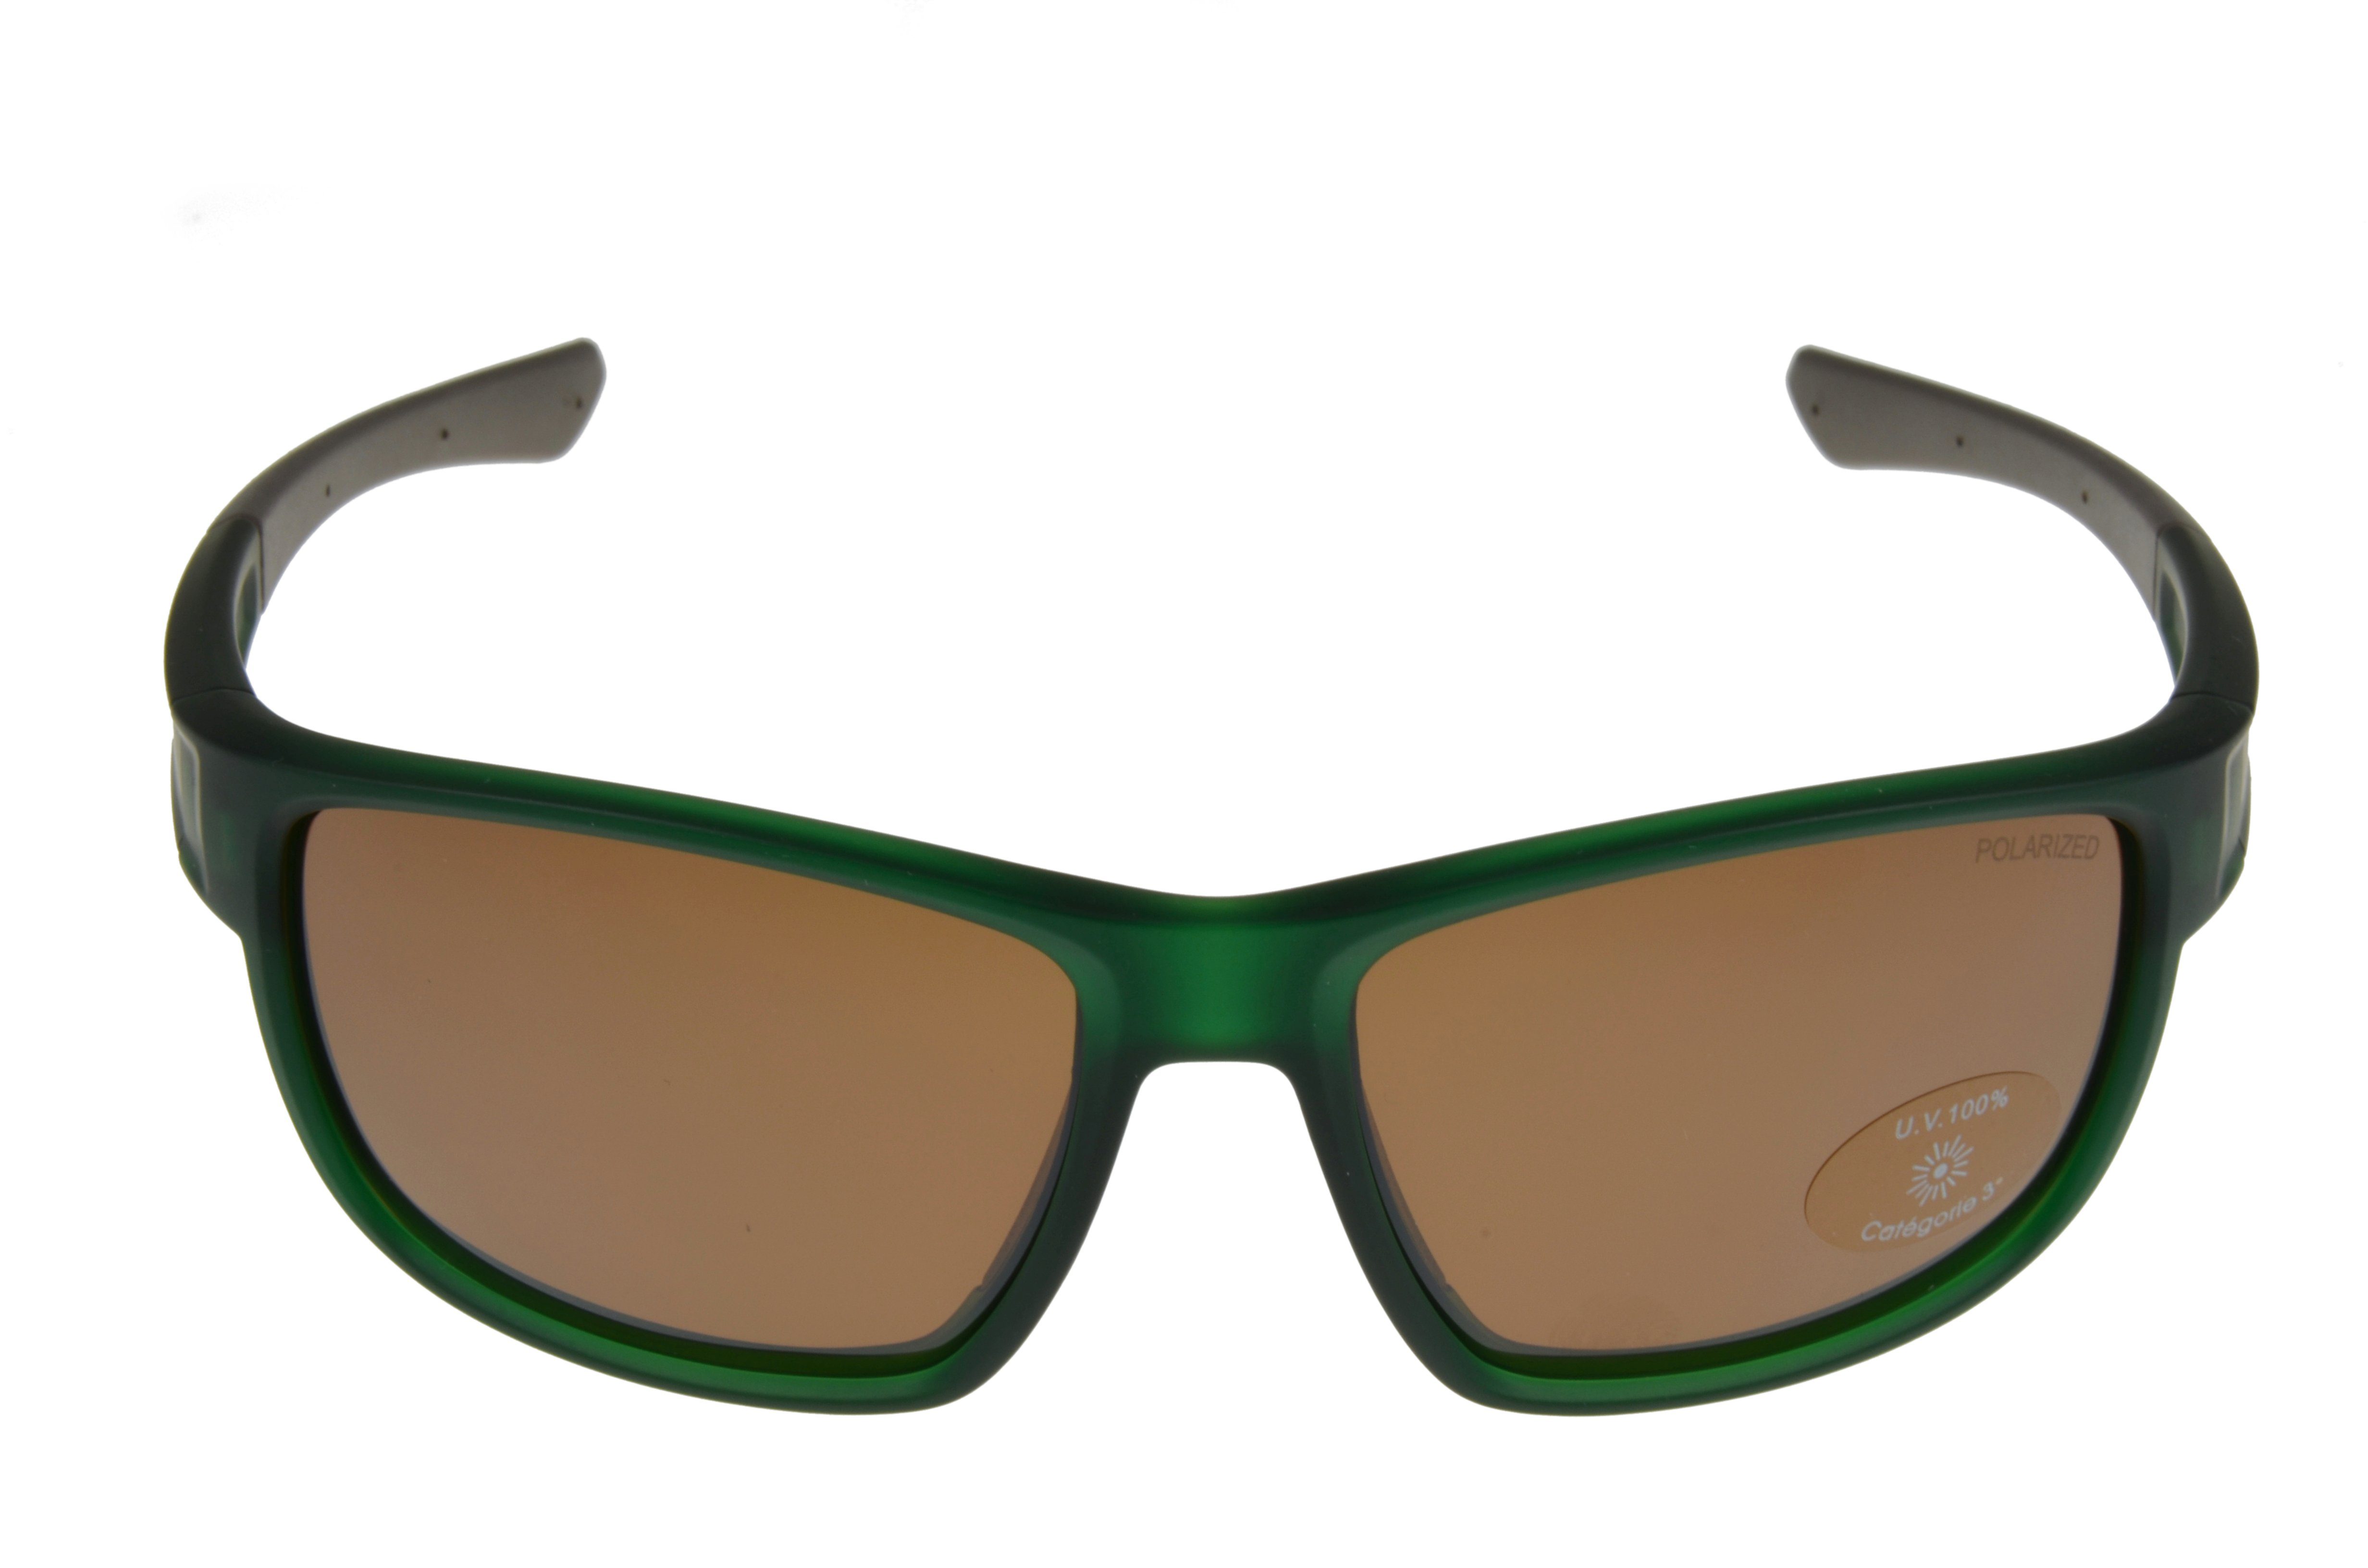 Gamswild Sportbrille WS7434 Sonnenbrille Unisex, braun, Fahrradbrille Modell, schwarz, grün schmal pink, Damen Skibrille geschnittenes Herren